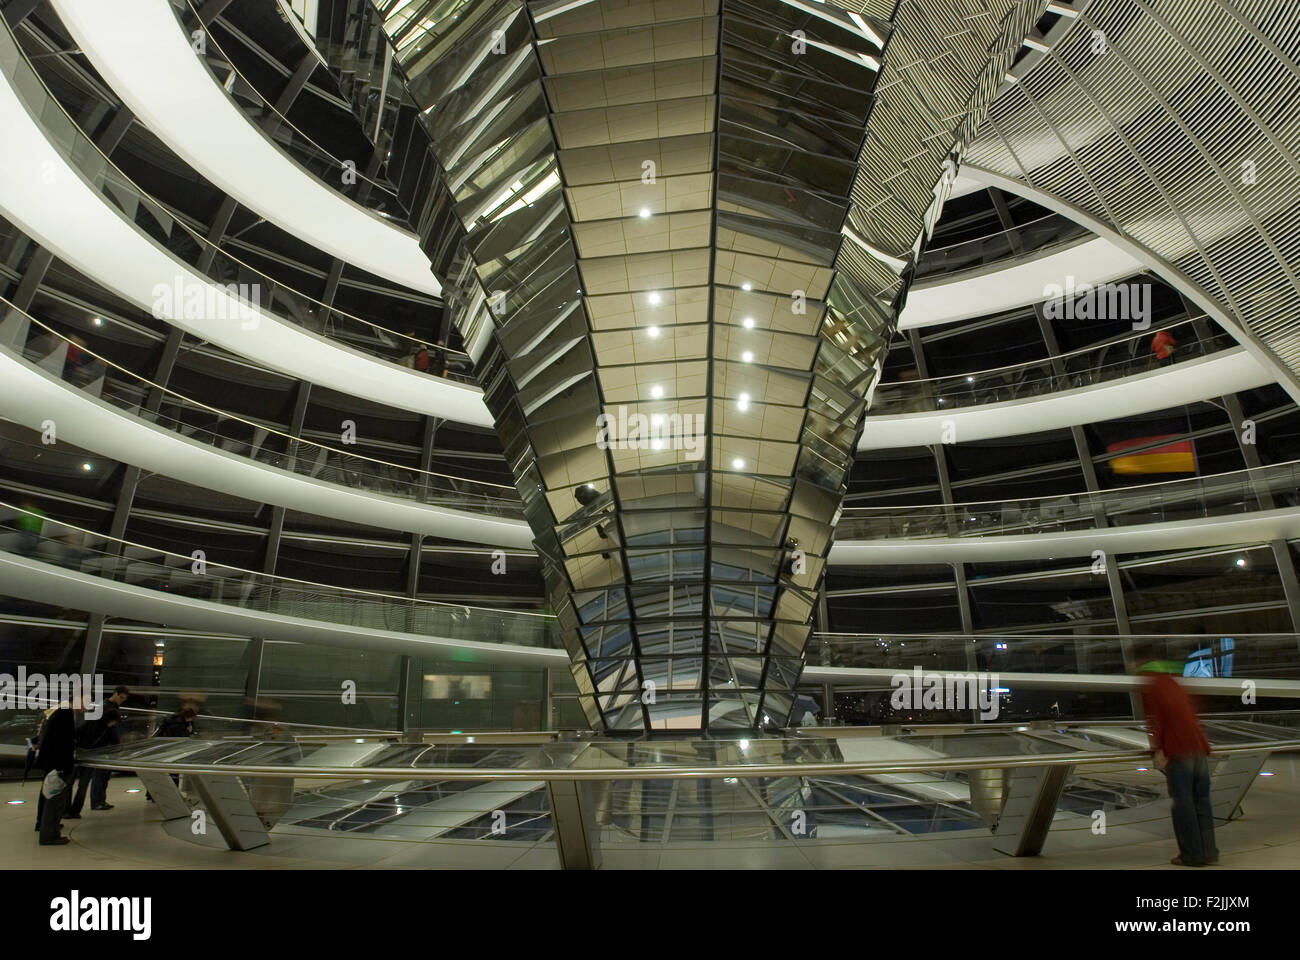 Reichstagkuppel du gouvernement allemand Berlin Allemagne Banque D'Images